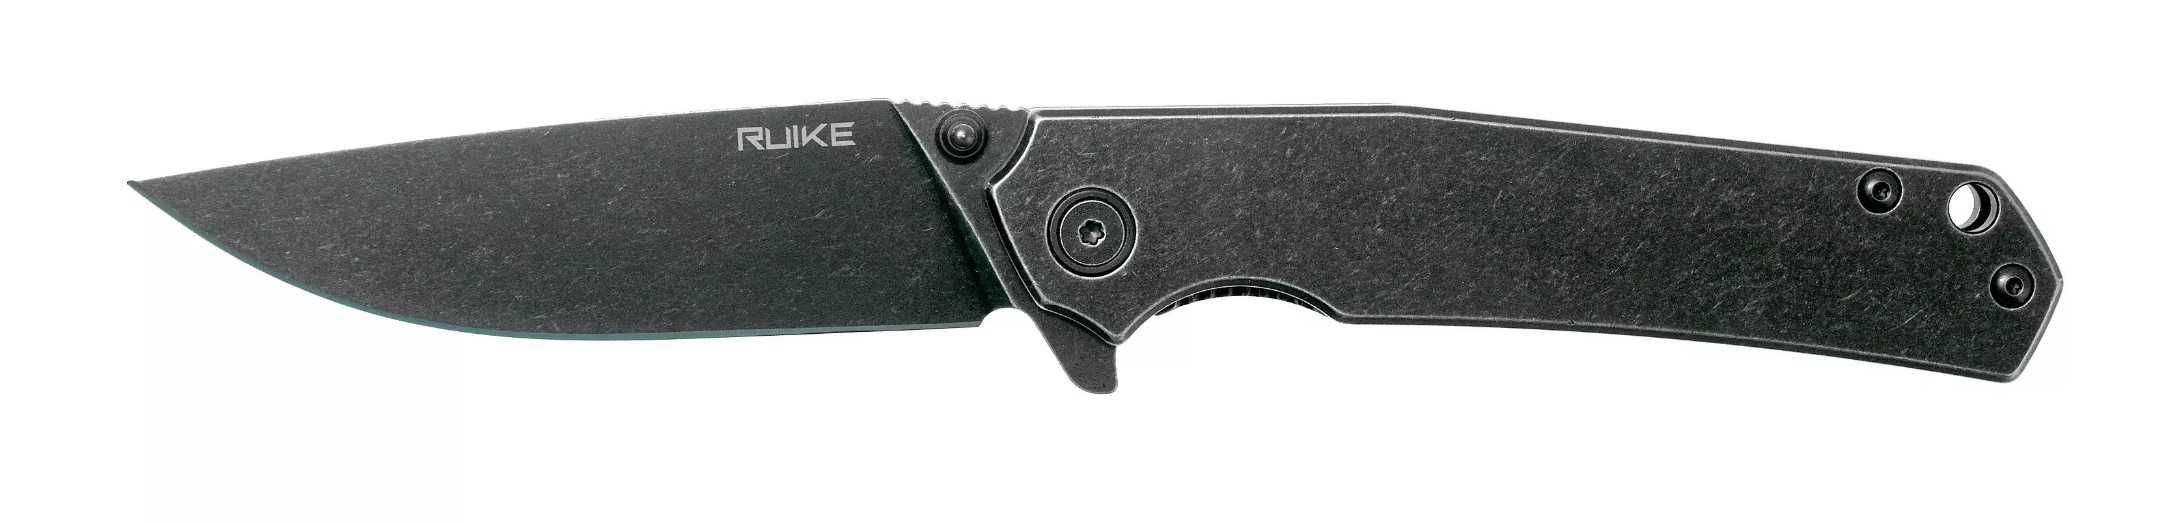 Nóż Ruike P801-SB składany Długość 20cm Czarny